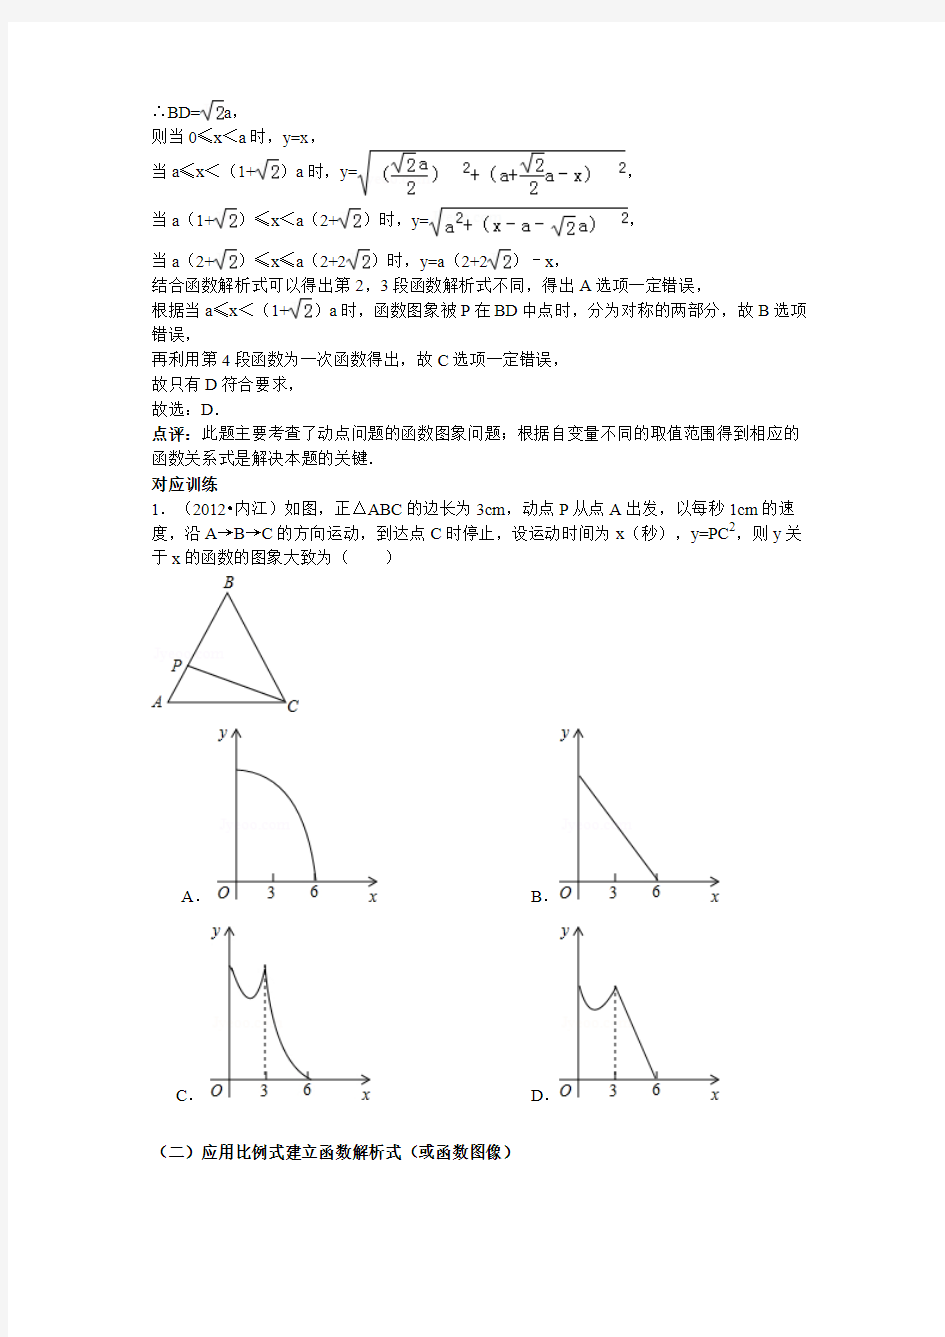 2013年中考数学动点型问题(含答案)